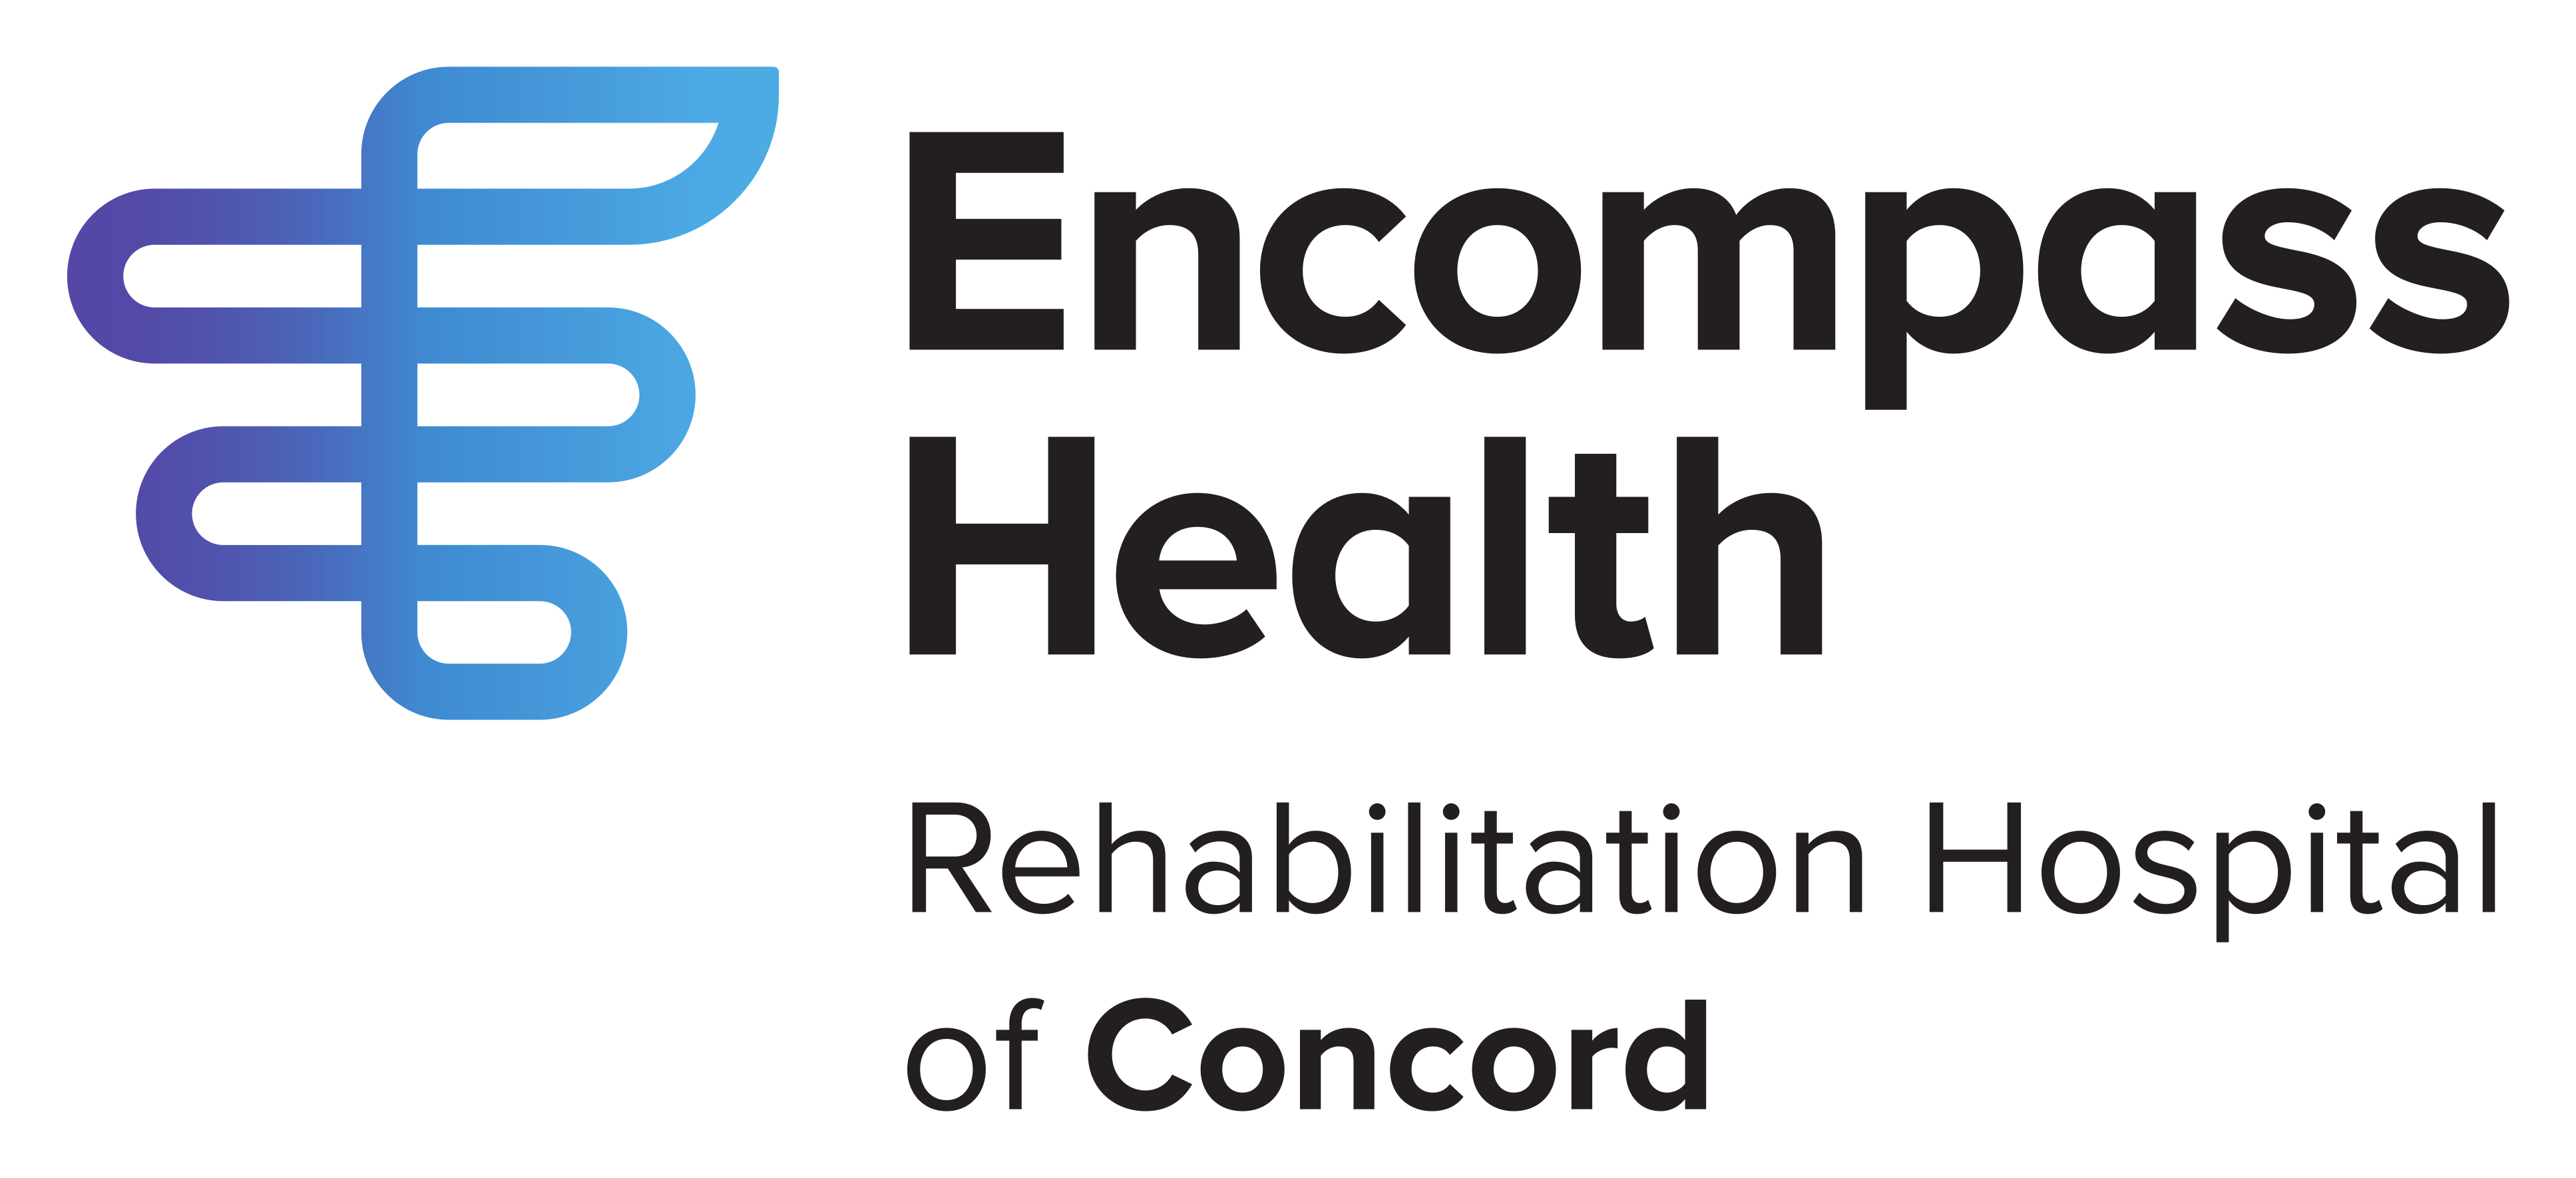 Encompass Health Logo